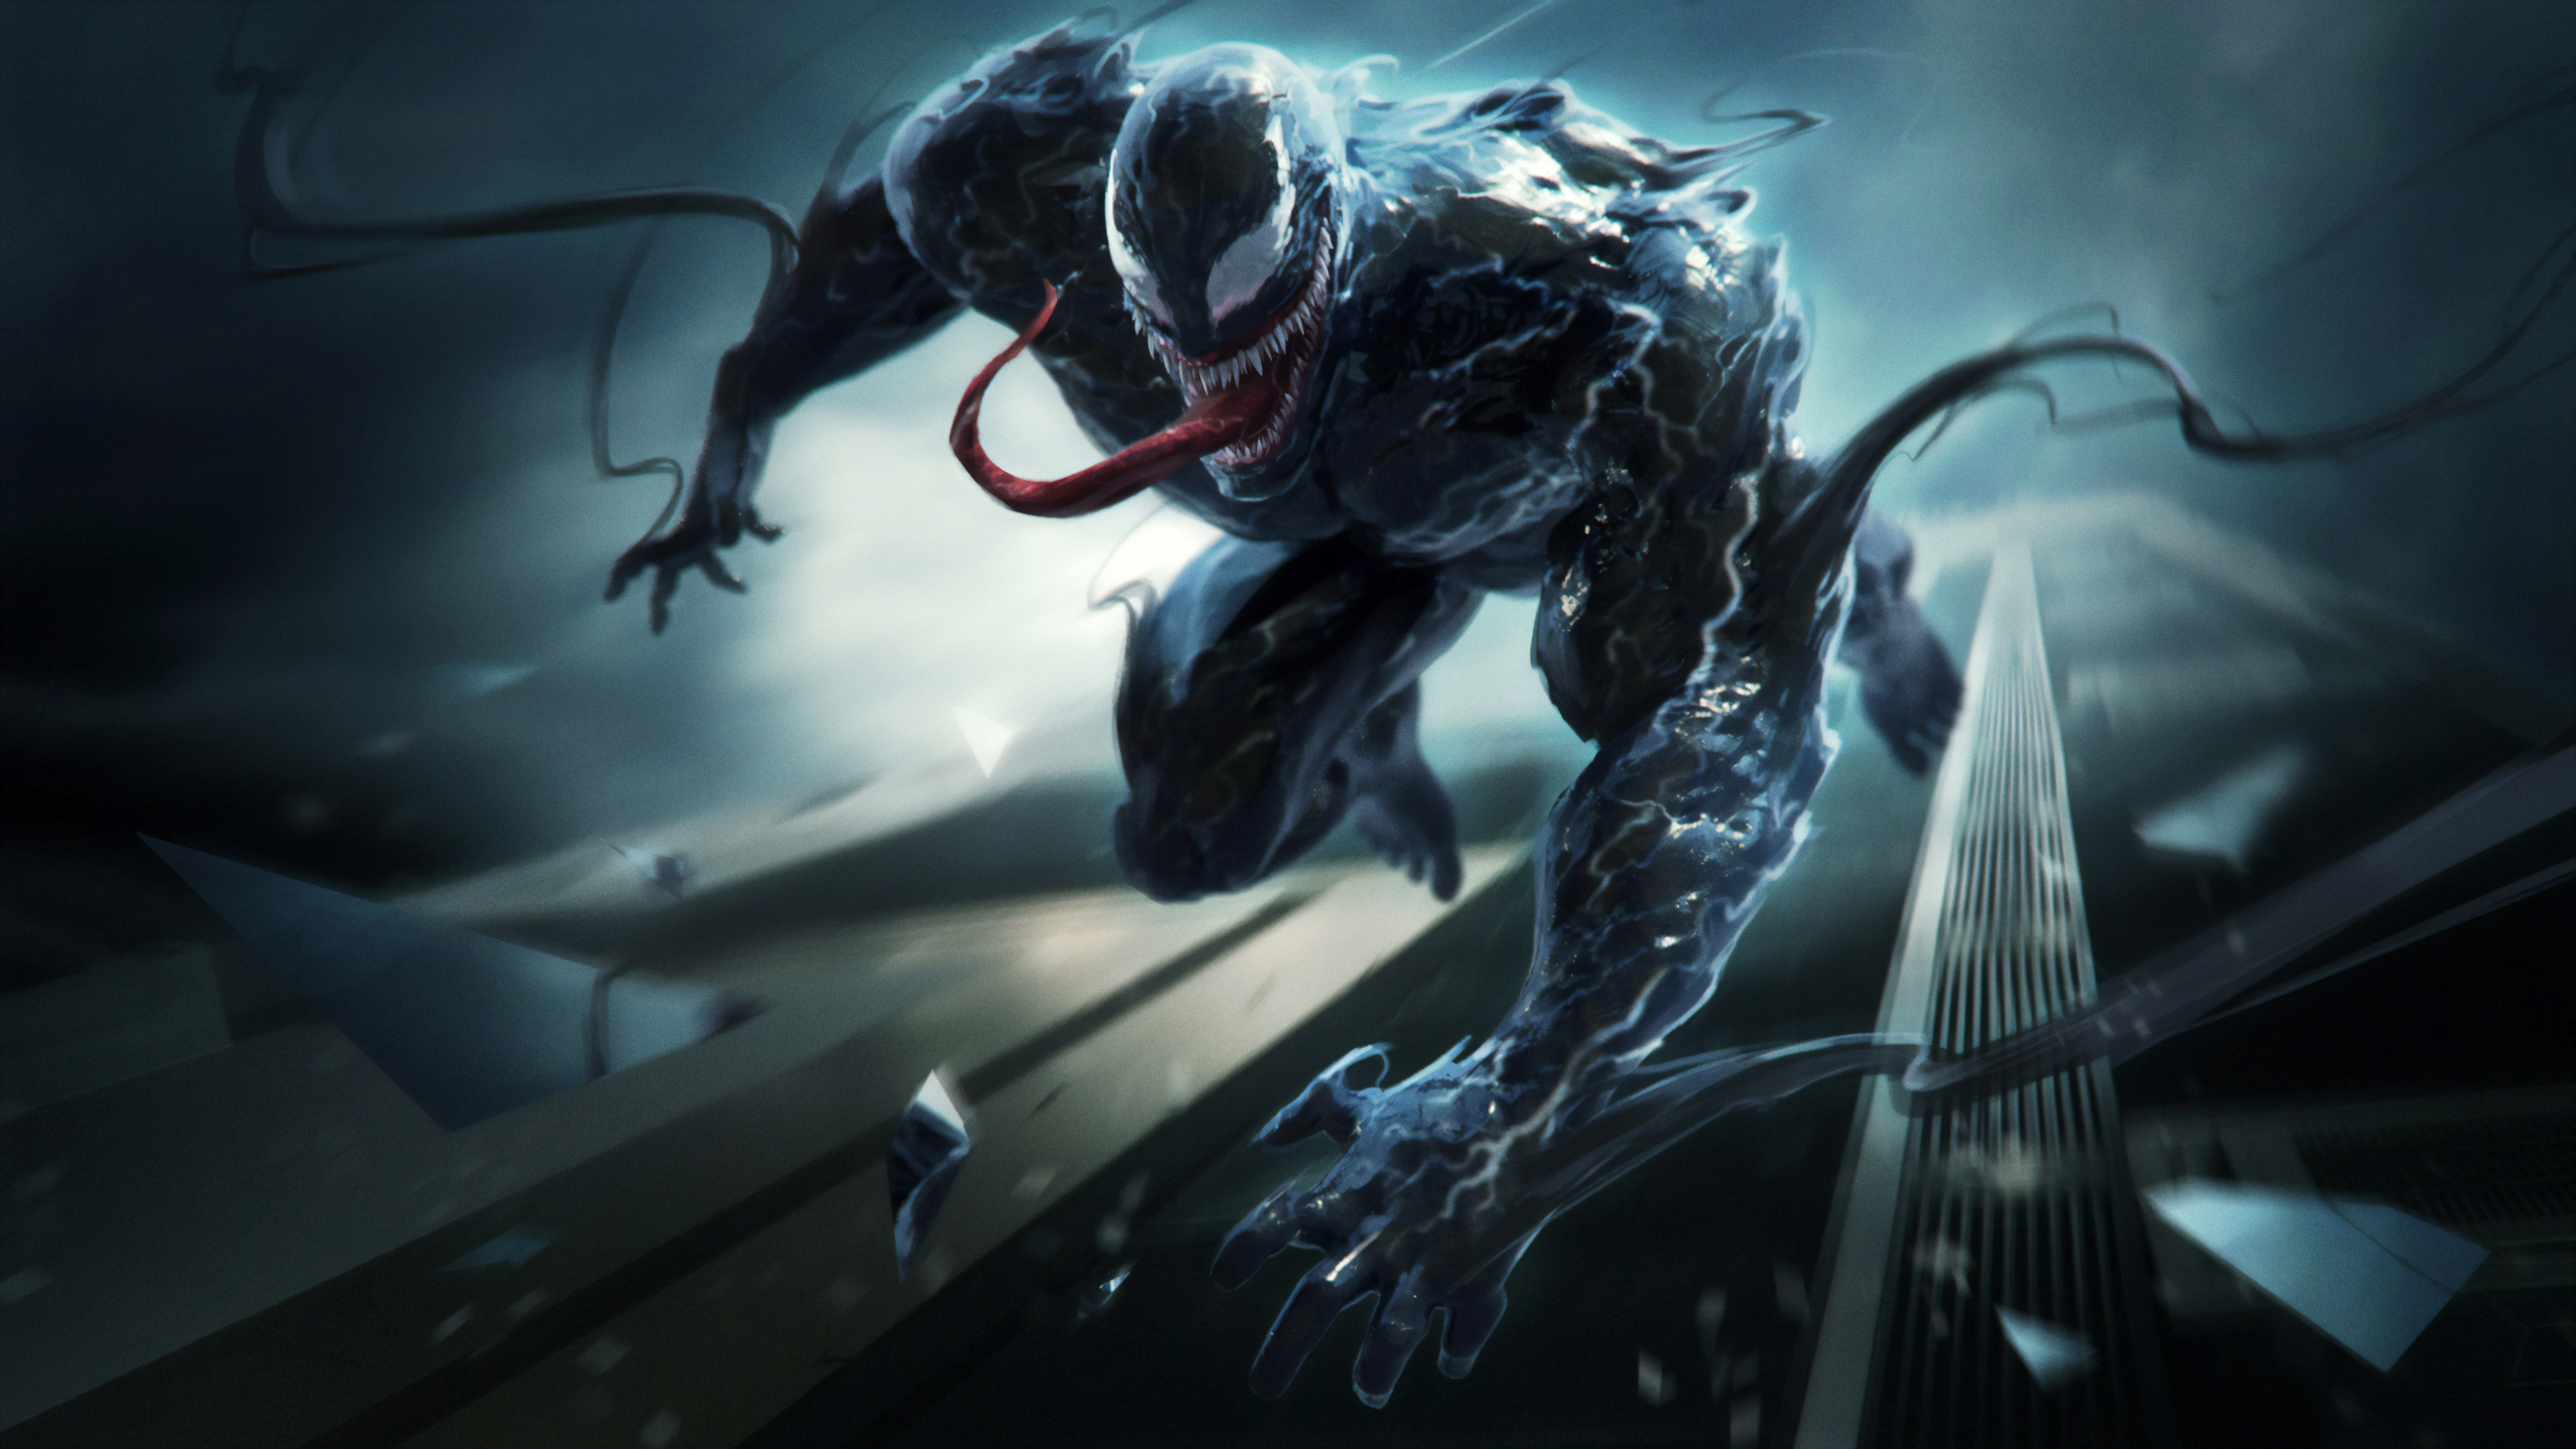 Wallpaper 4k Venom: Với những hình nền siêu nét 4k về nhân vật Venom, bạn sẽ nhận ra sức mạnh và sự ác liệt của hắn với từng chi tiết vô cùng chân thực. Hãy tải ngay về để trang trí cho màn hình của mình nhé!